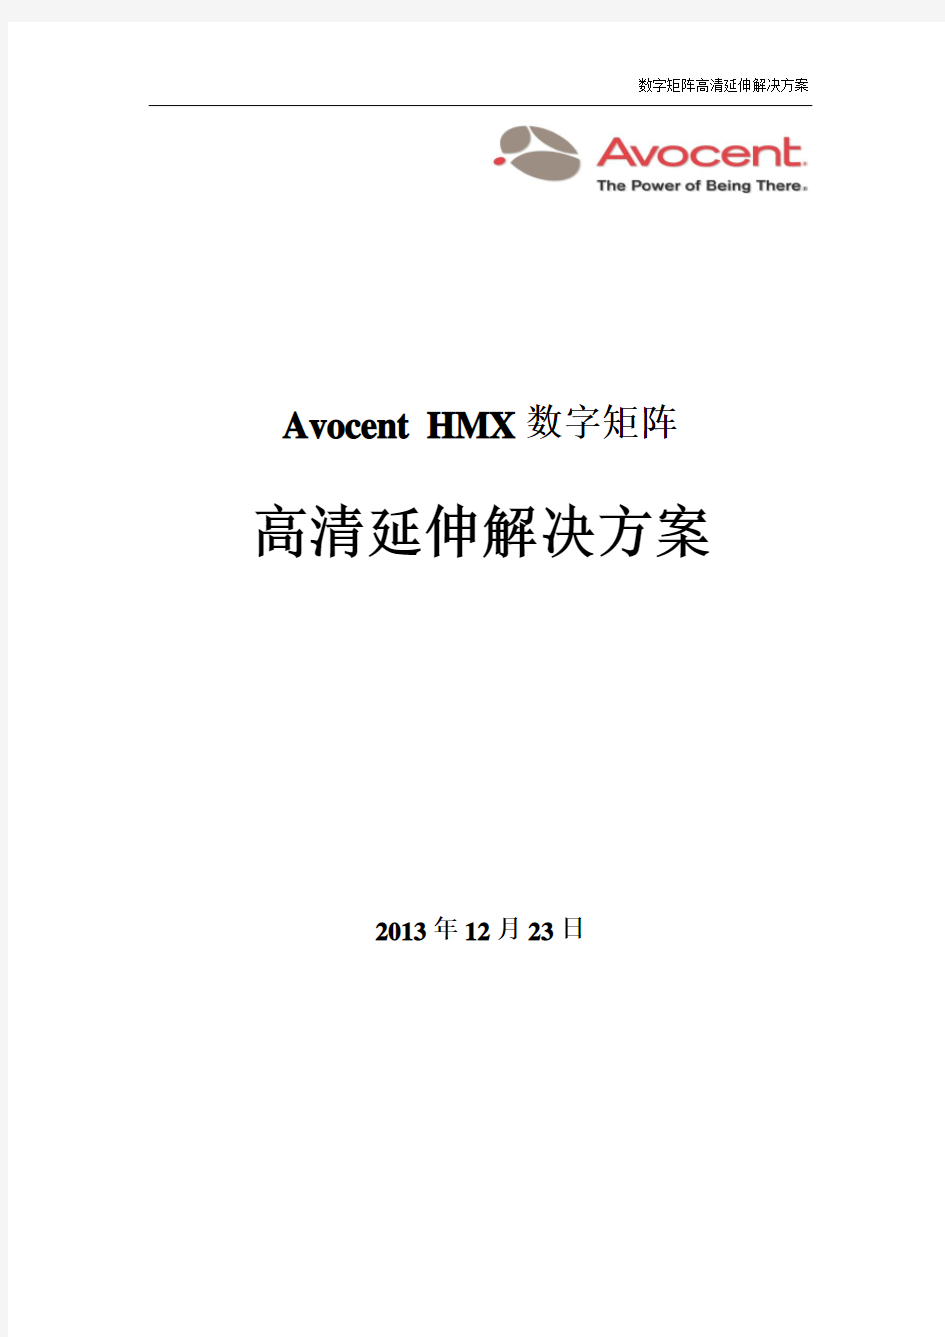 Avocent HMX解决方案_v1.0